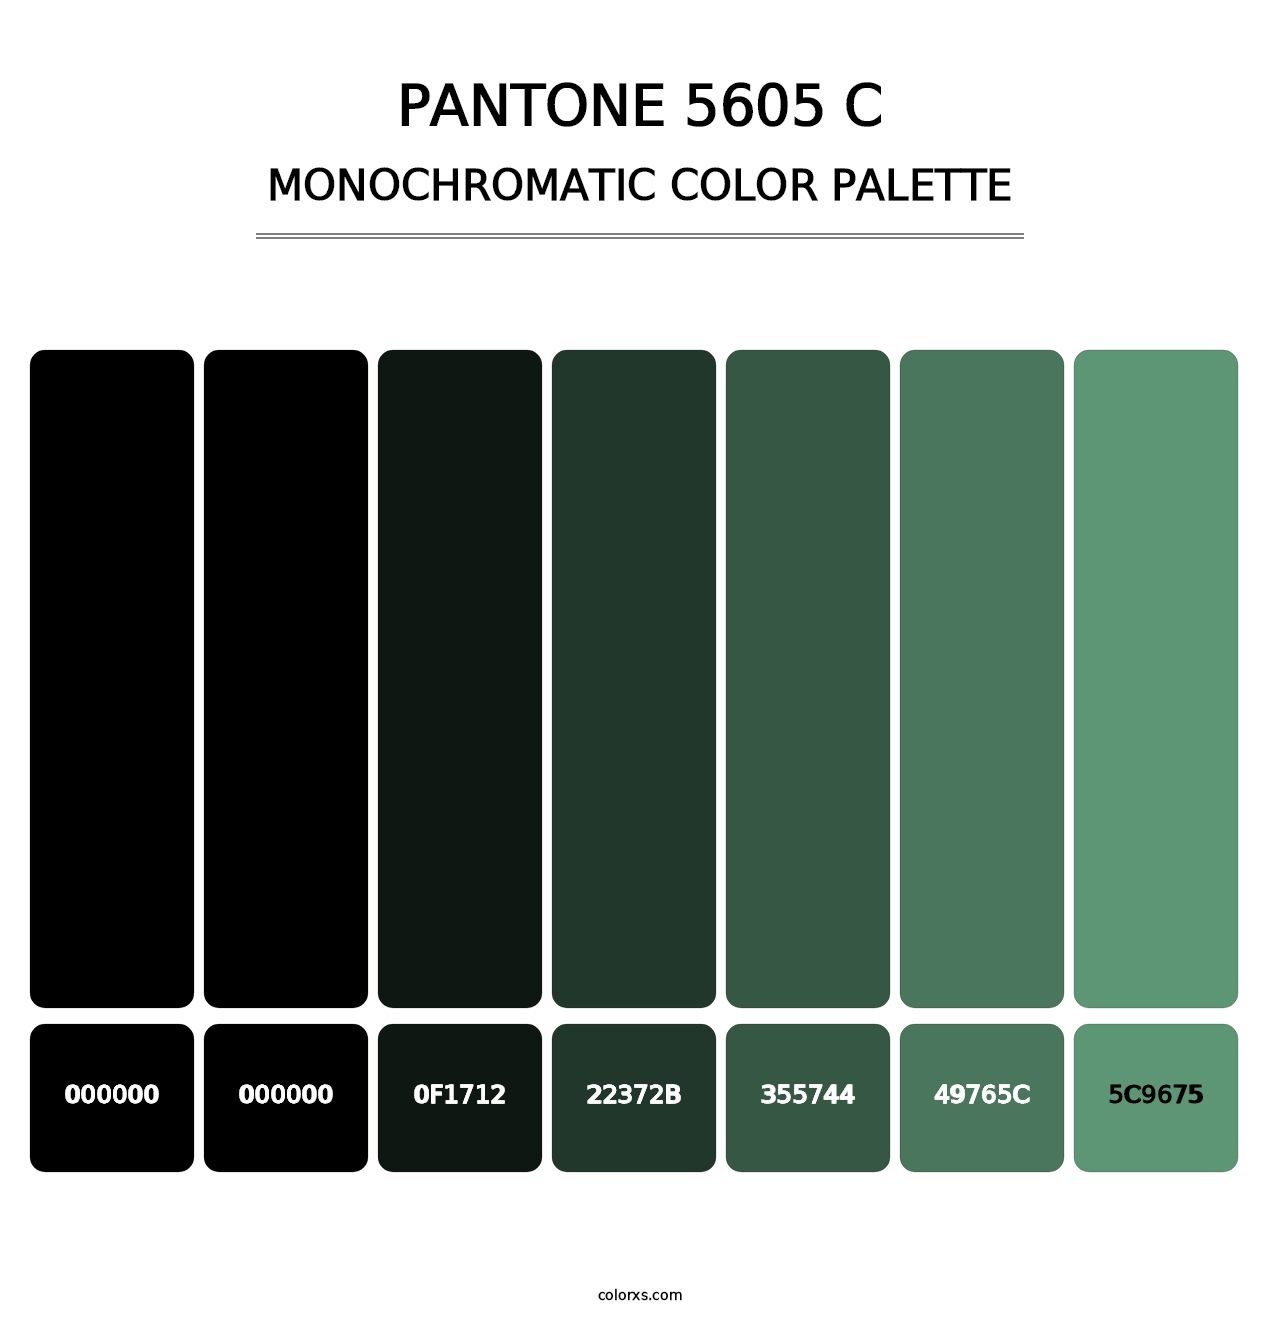 PANTONE 5605 C - Monochromatic Color Palette